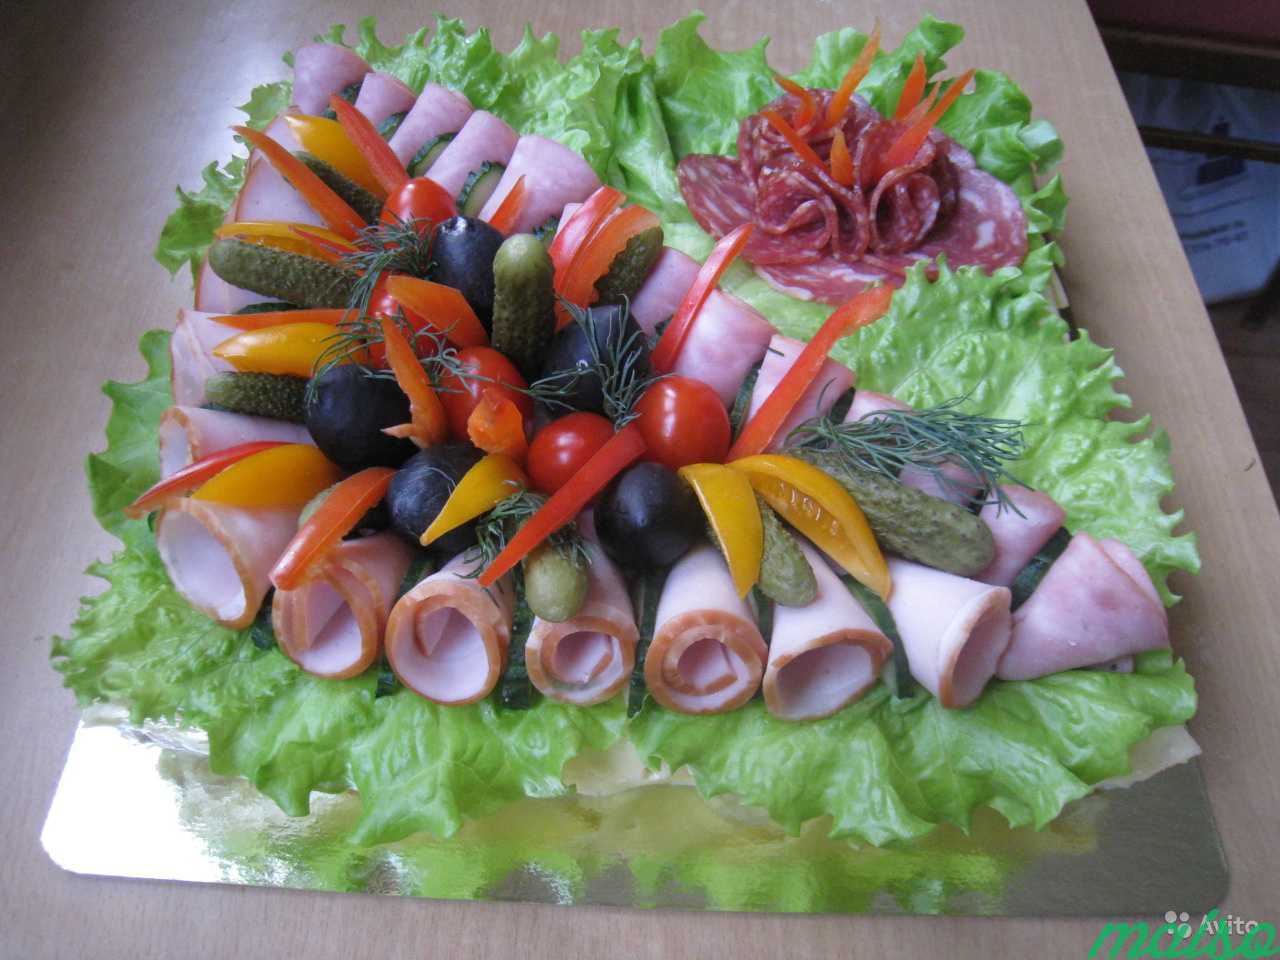 Мясные и рыбные торты на заказ к любому празднику в Санкт-Петербурге. Фото 10